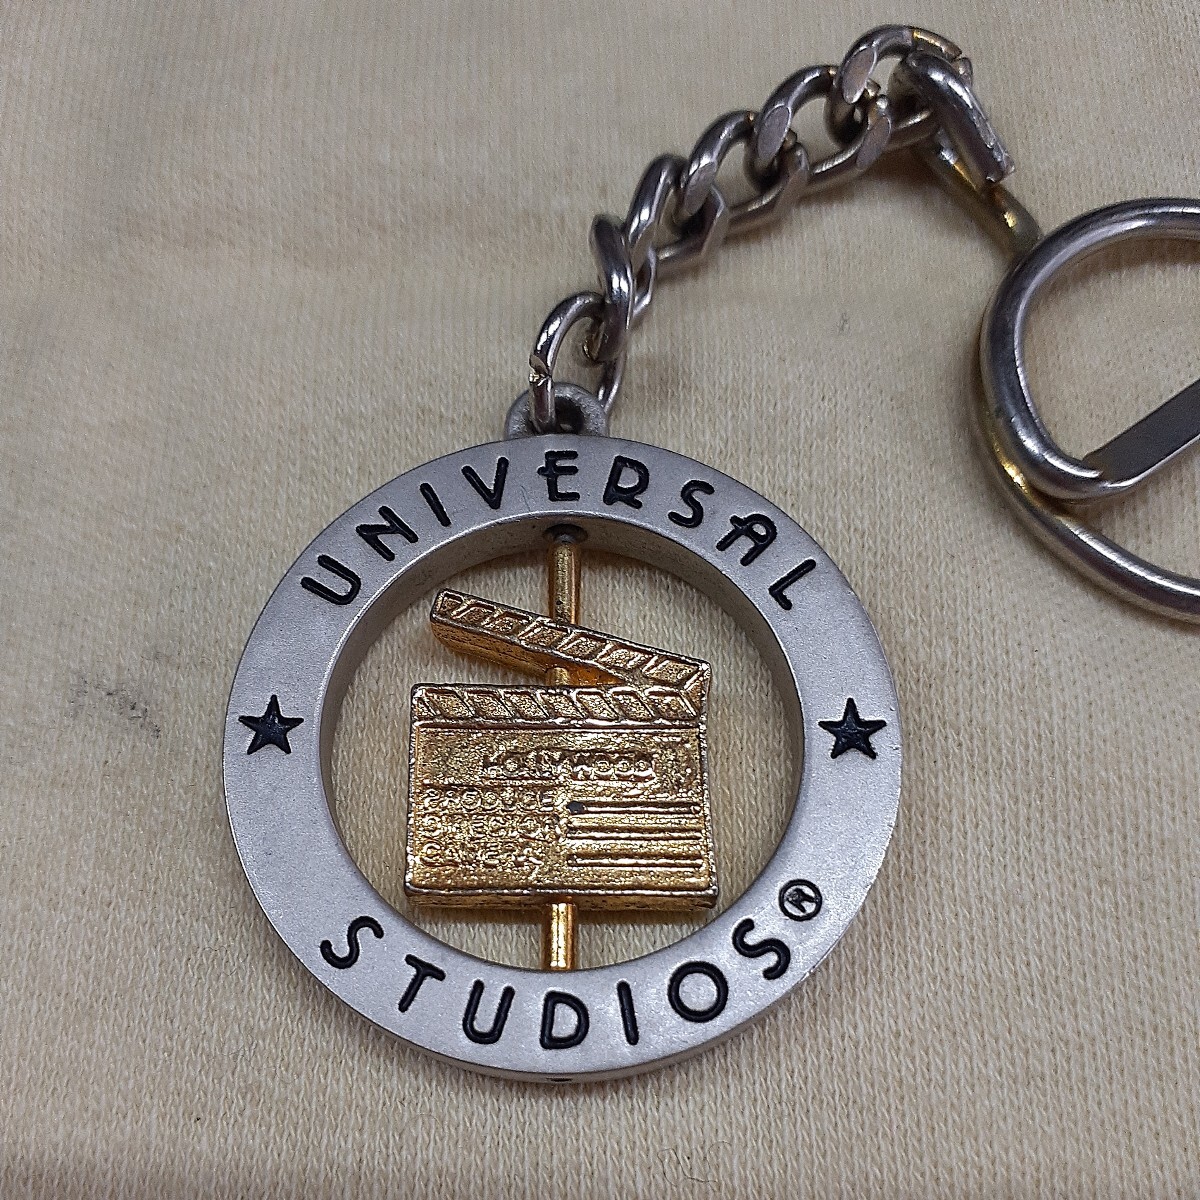  универсальный Studio Hollywood брелок для ключа ga подбородок ko стоимость доставки 120 иен 